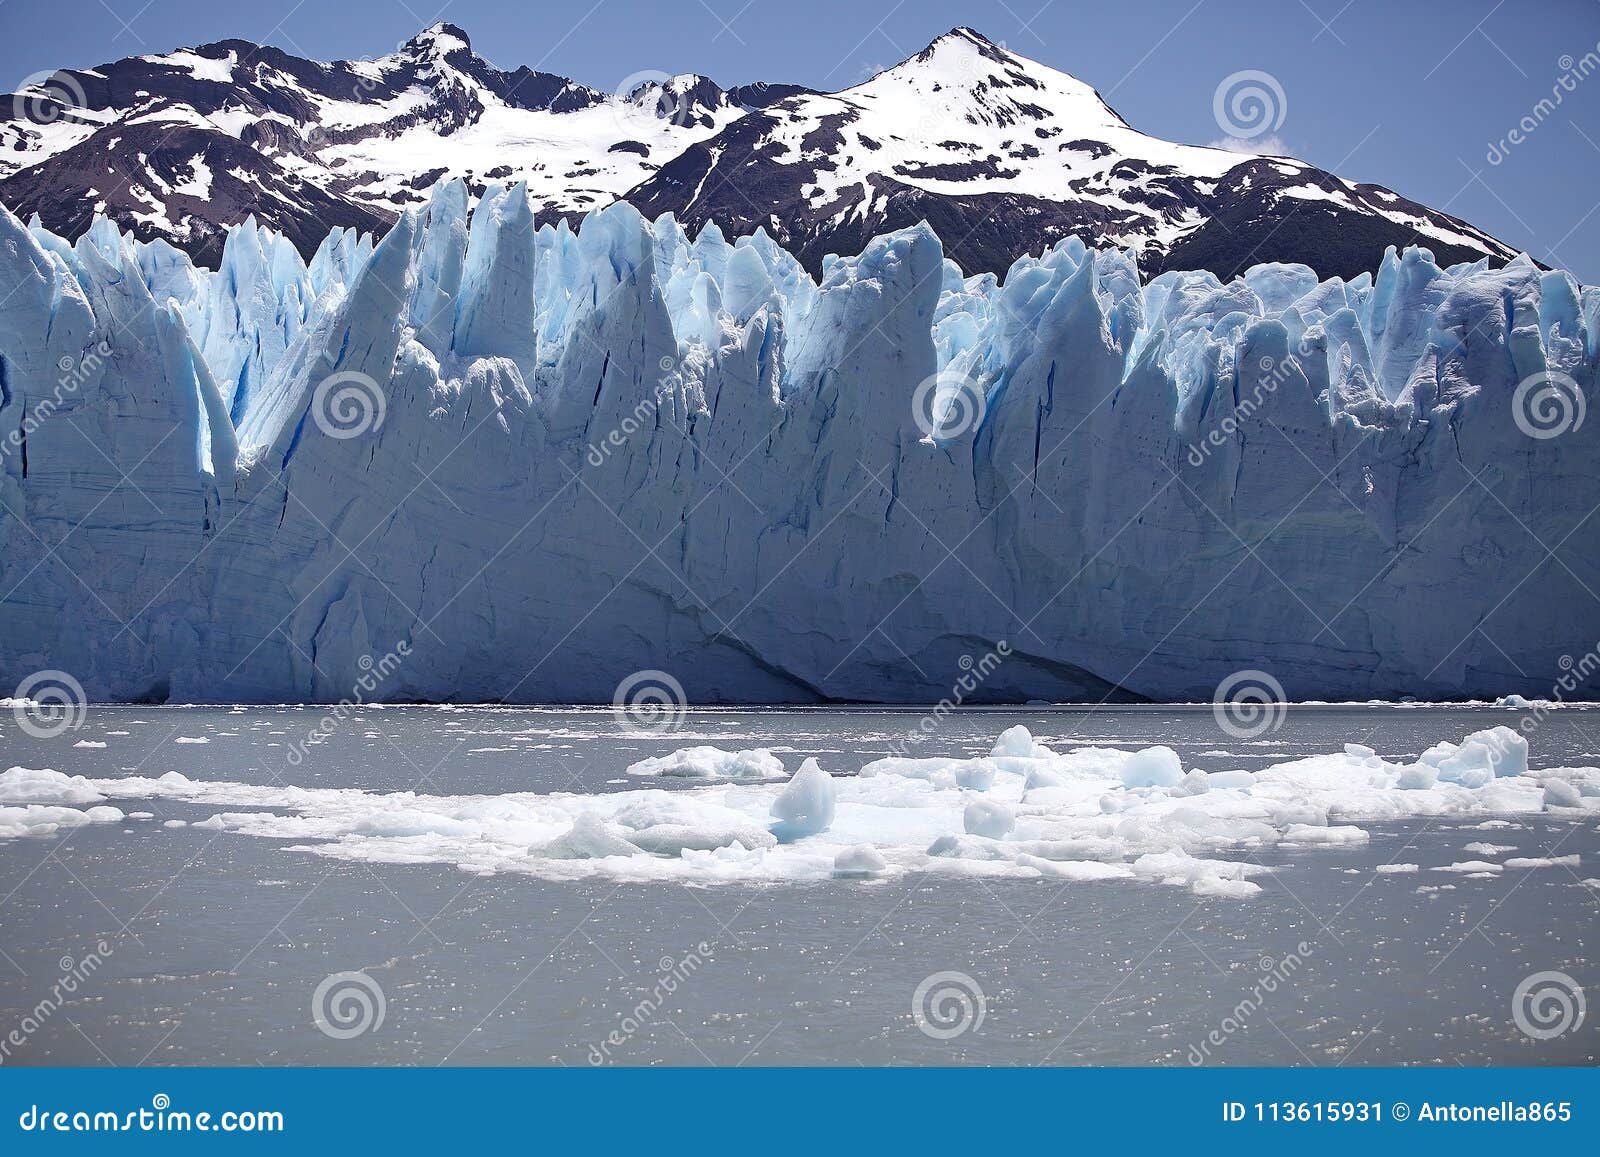 perito moreno glacier view from brazo rico in the argentino lake in patagonia, argentina